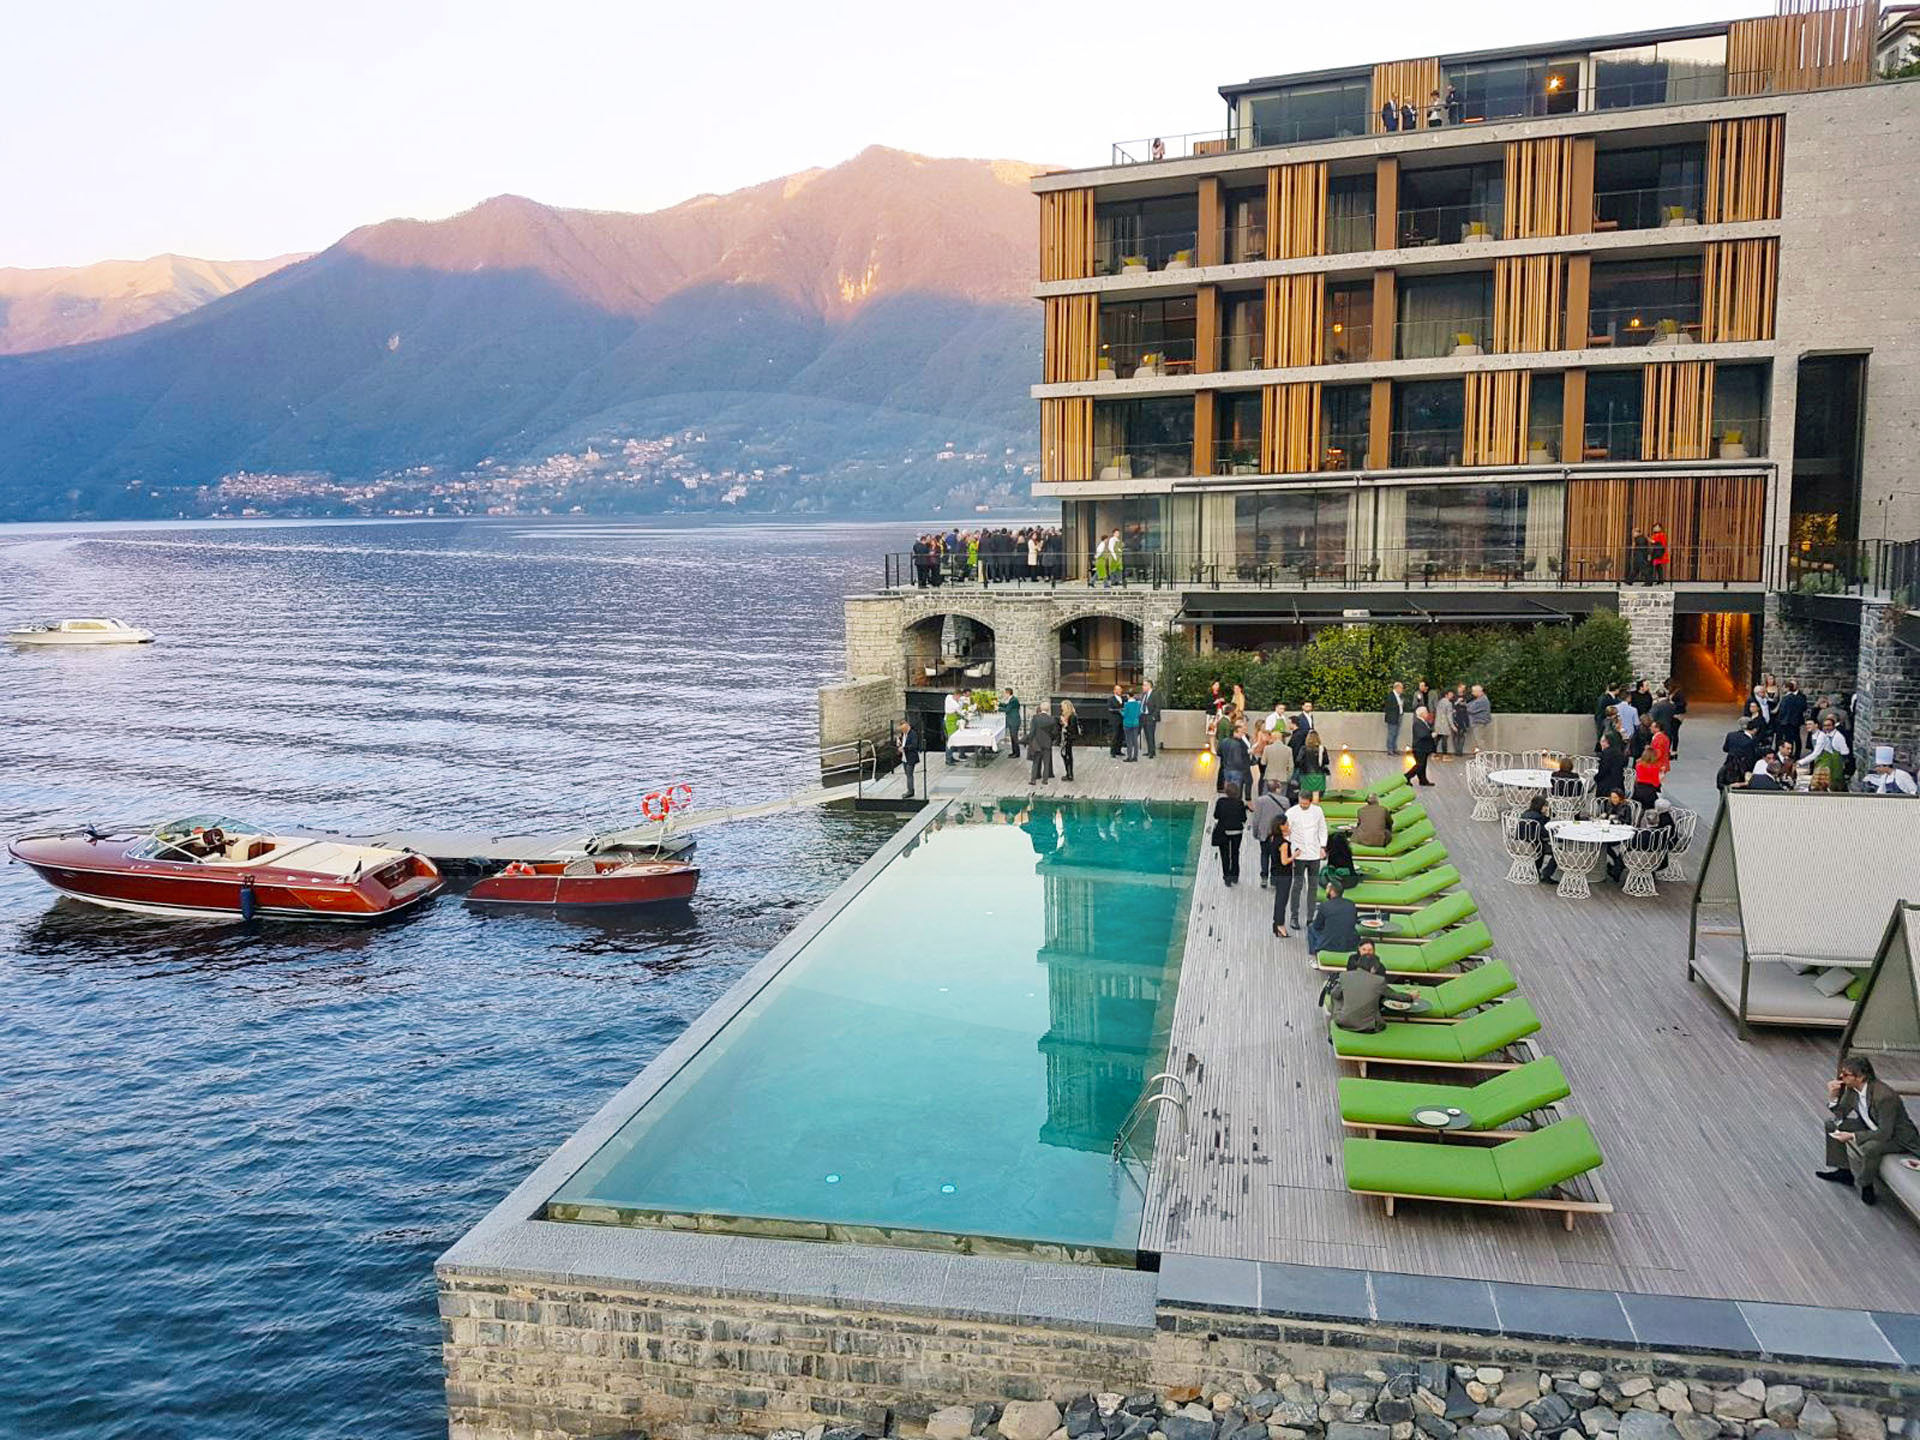 Patricia Urquiola designs Hotel Il Sereno on the shores of Lake Como